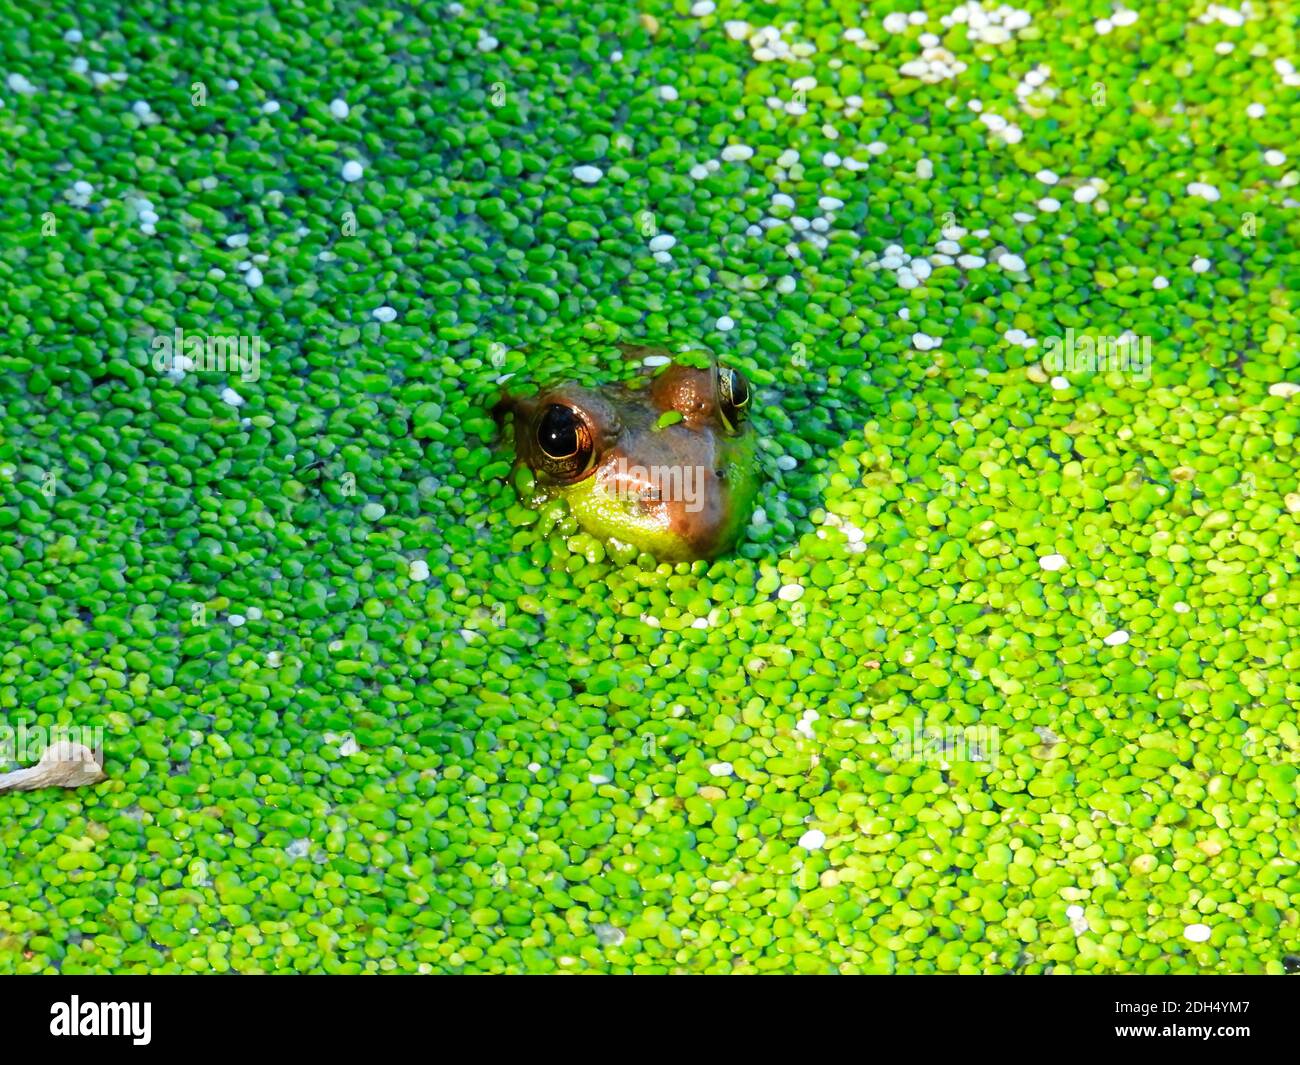 Rana nello stagno: Una rana sommersa in stagno con duckweed verde brillante che copre la superficie, solo la testa parziale della rana e gli occhi visibl Foto Stock